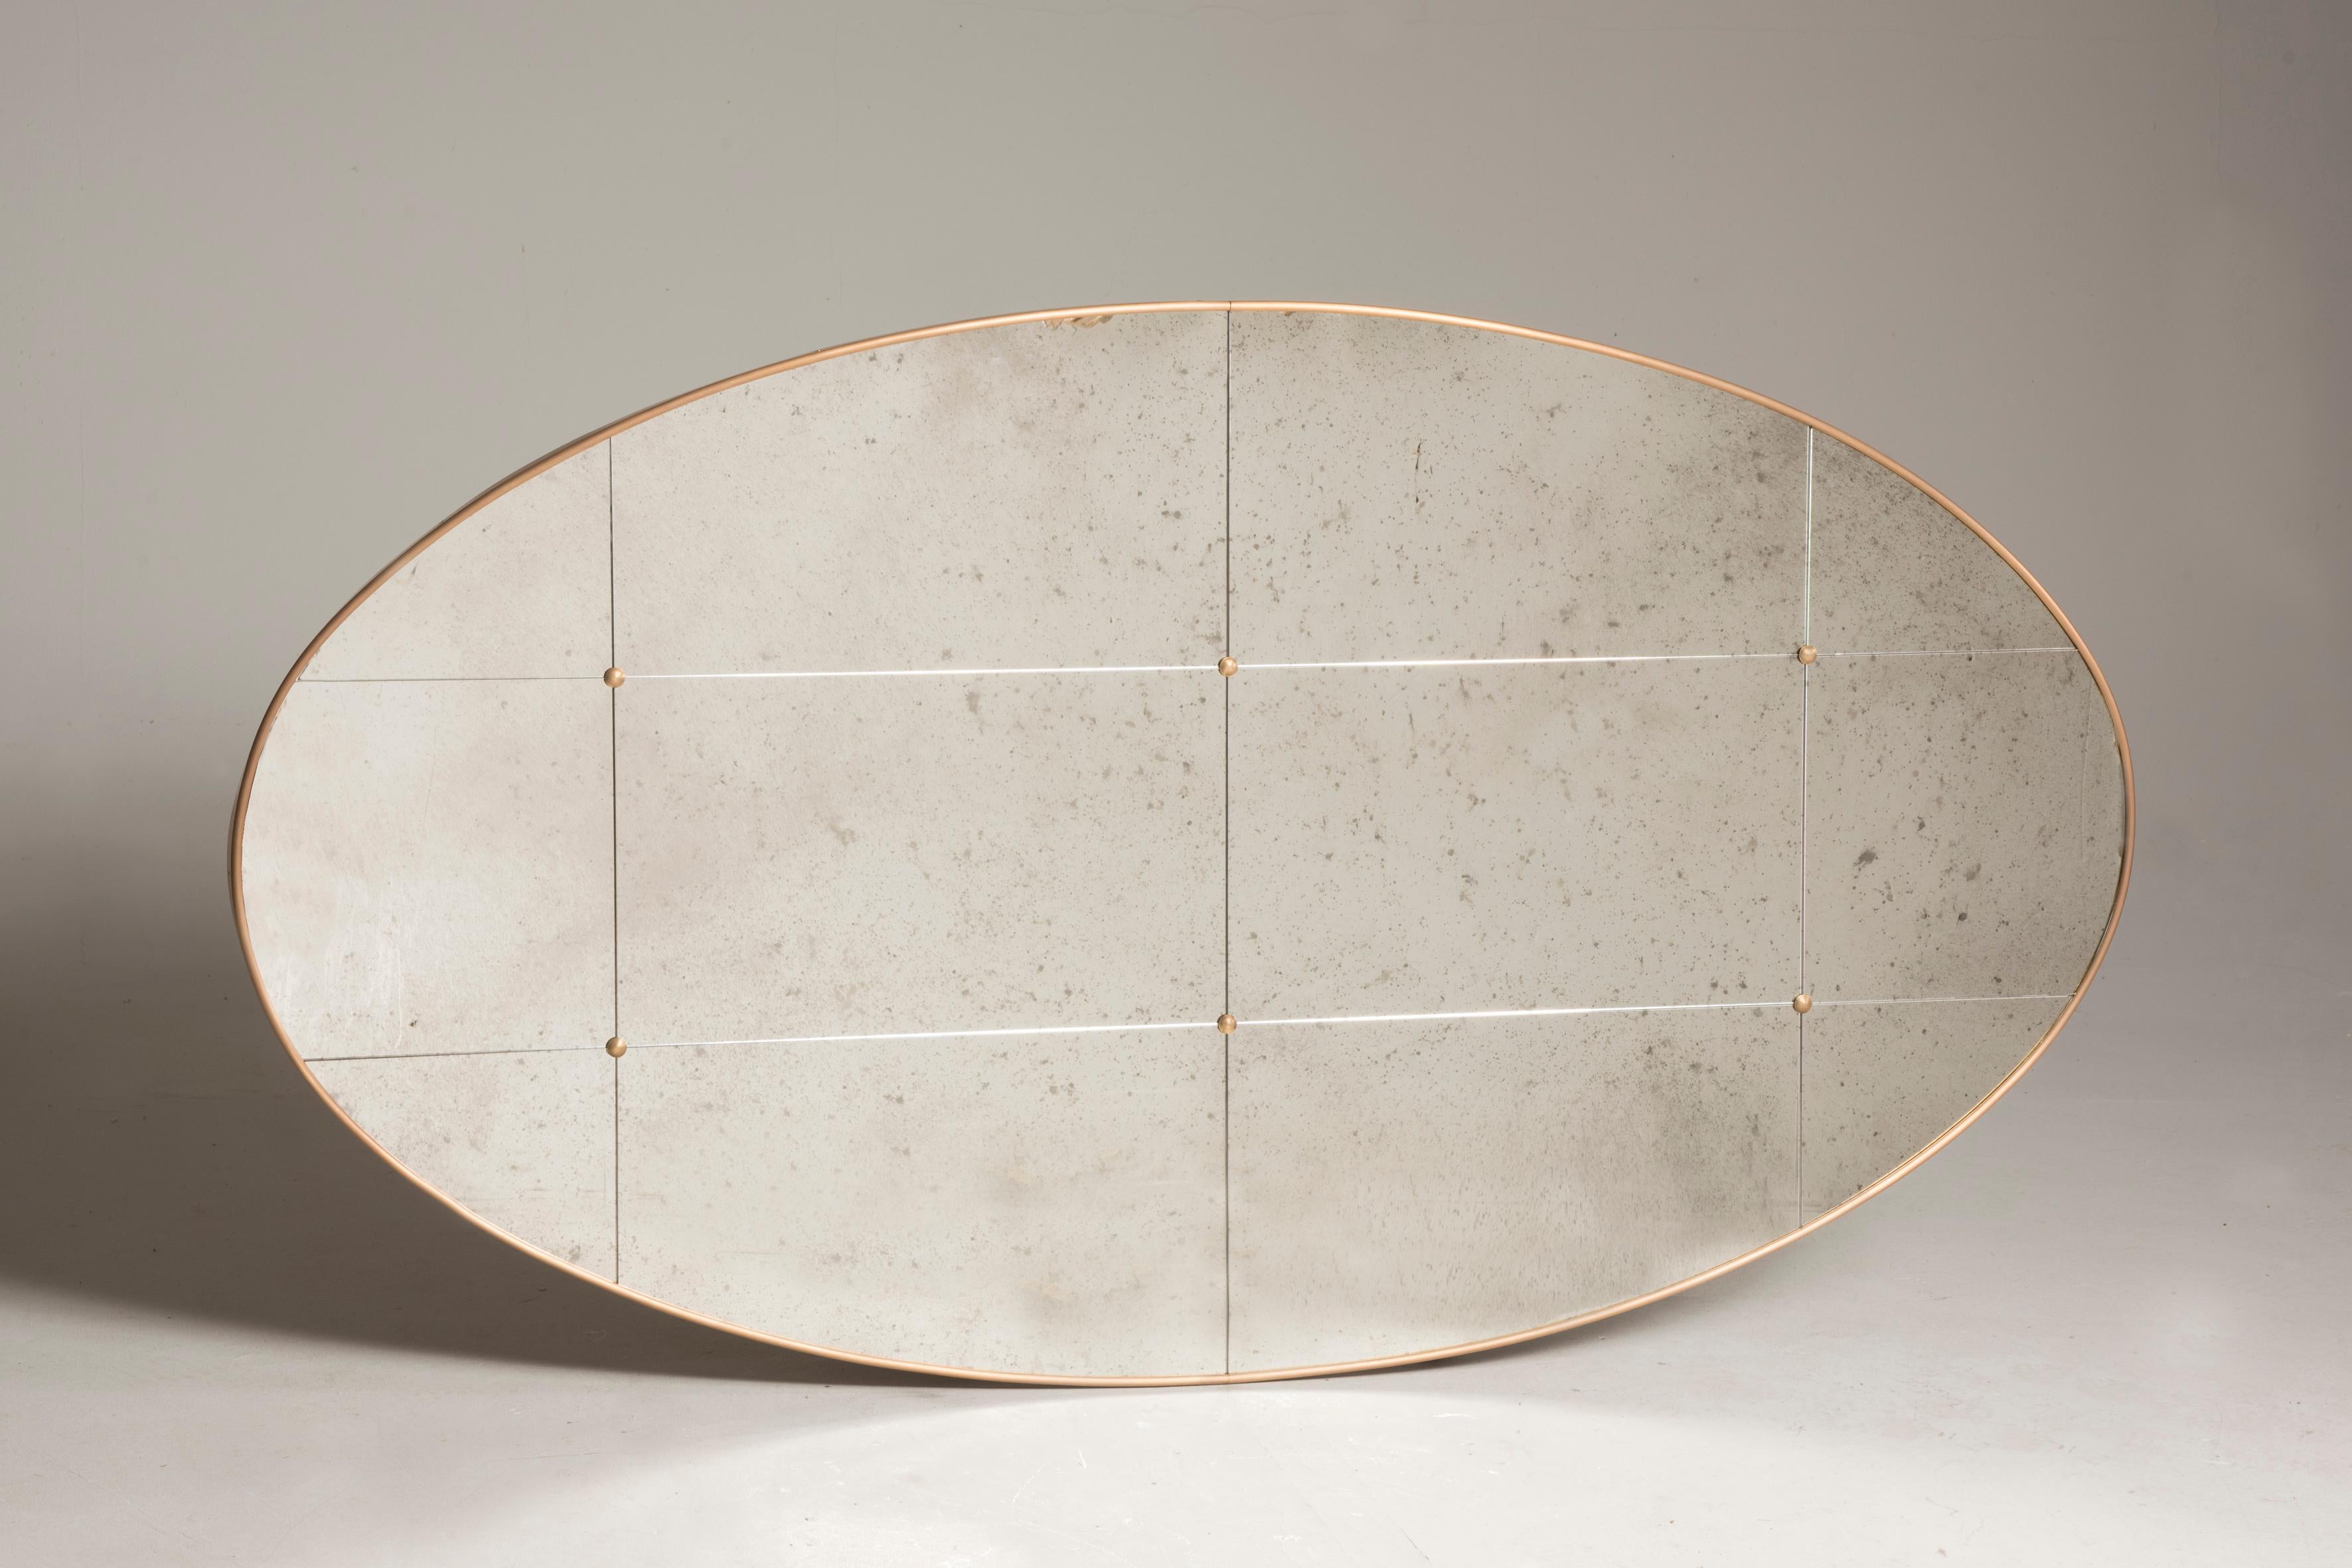 Pescetta präsentiert seine Kollektion moderner, individuell gestaltbarer Spiegel. Mit ihrem Messingrahmen, der Fensterscheibenoptik und den Messingnieten erinnern diese Spiegel an den Art-déco-Stil des frühen 20. Jahrhunderts. Sie eignen sich sowohl